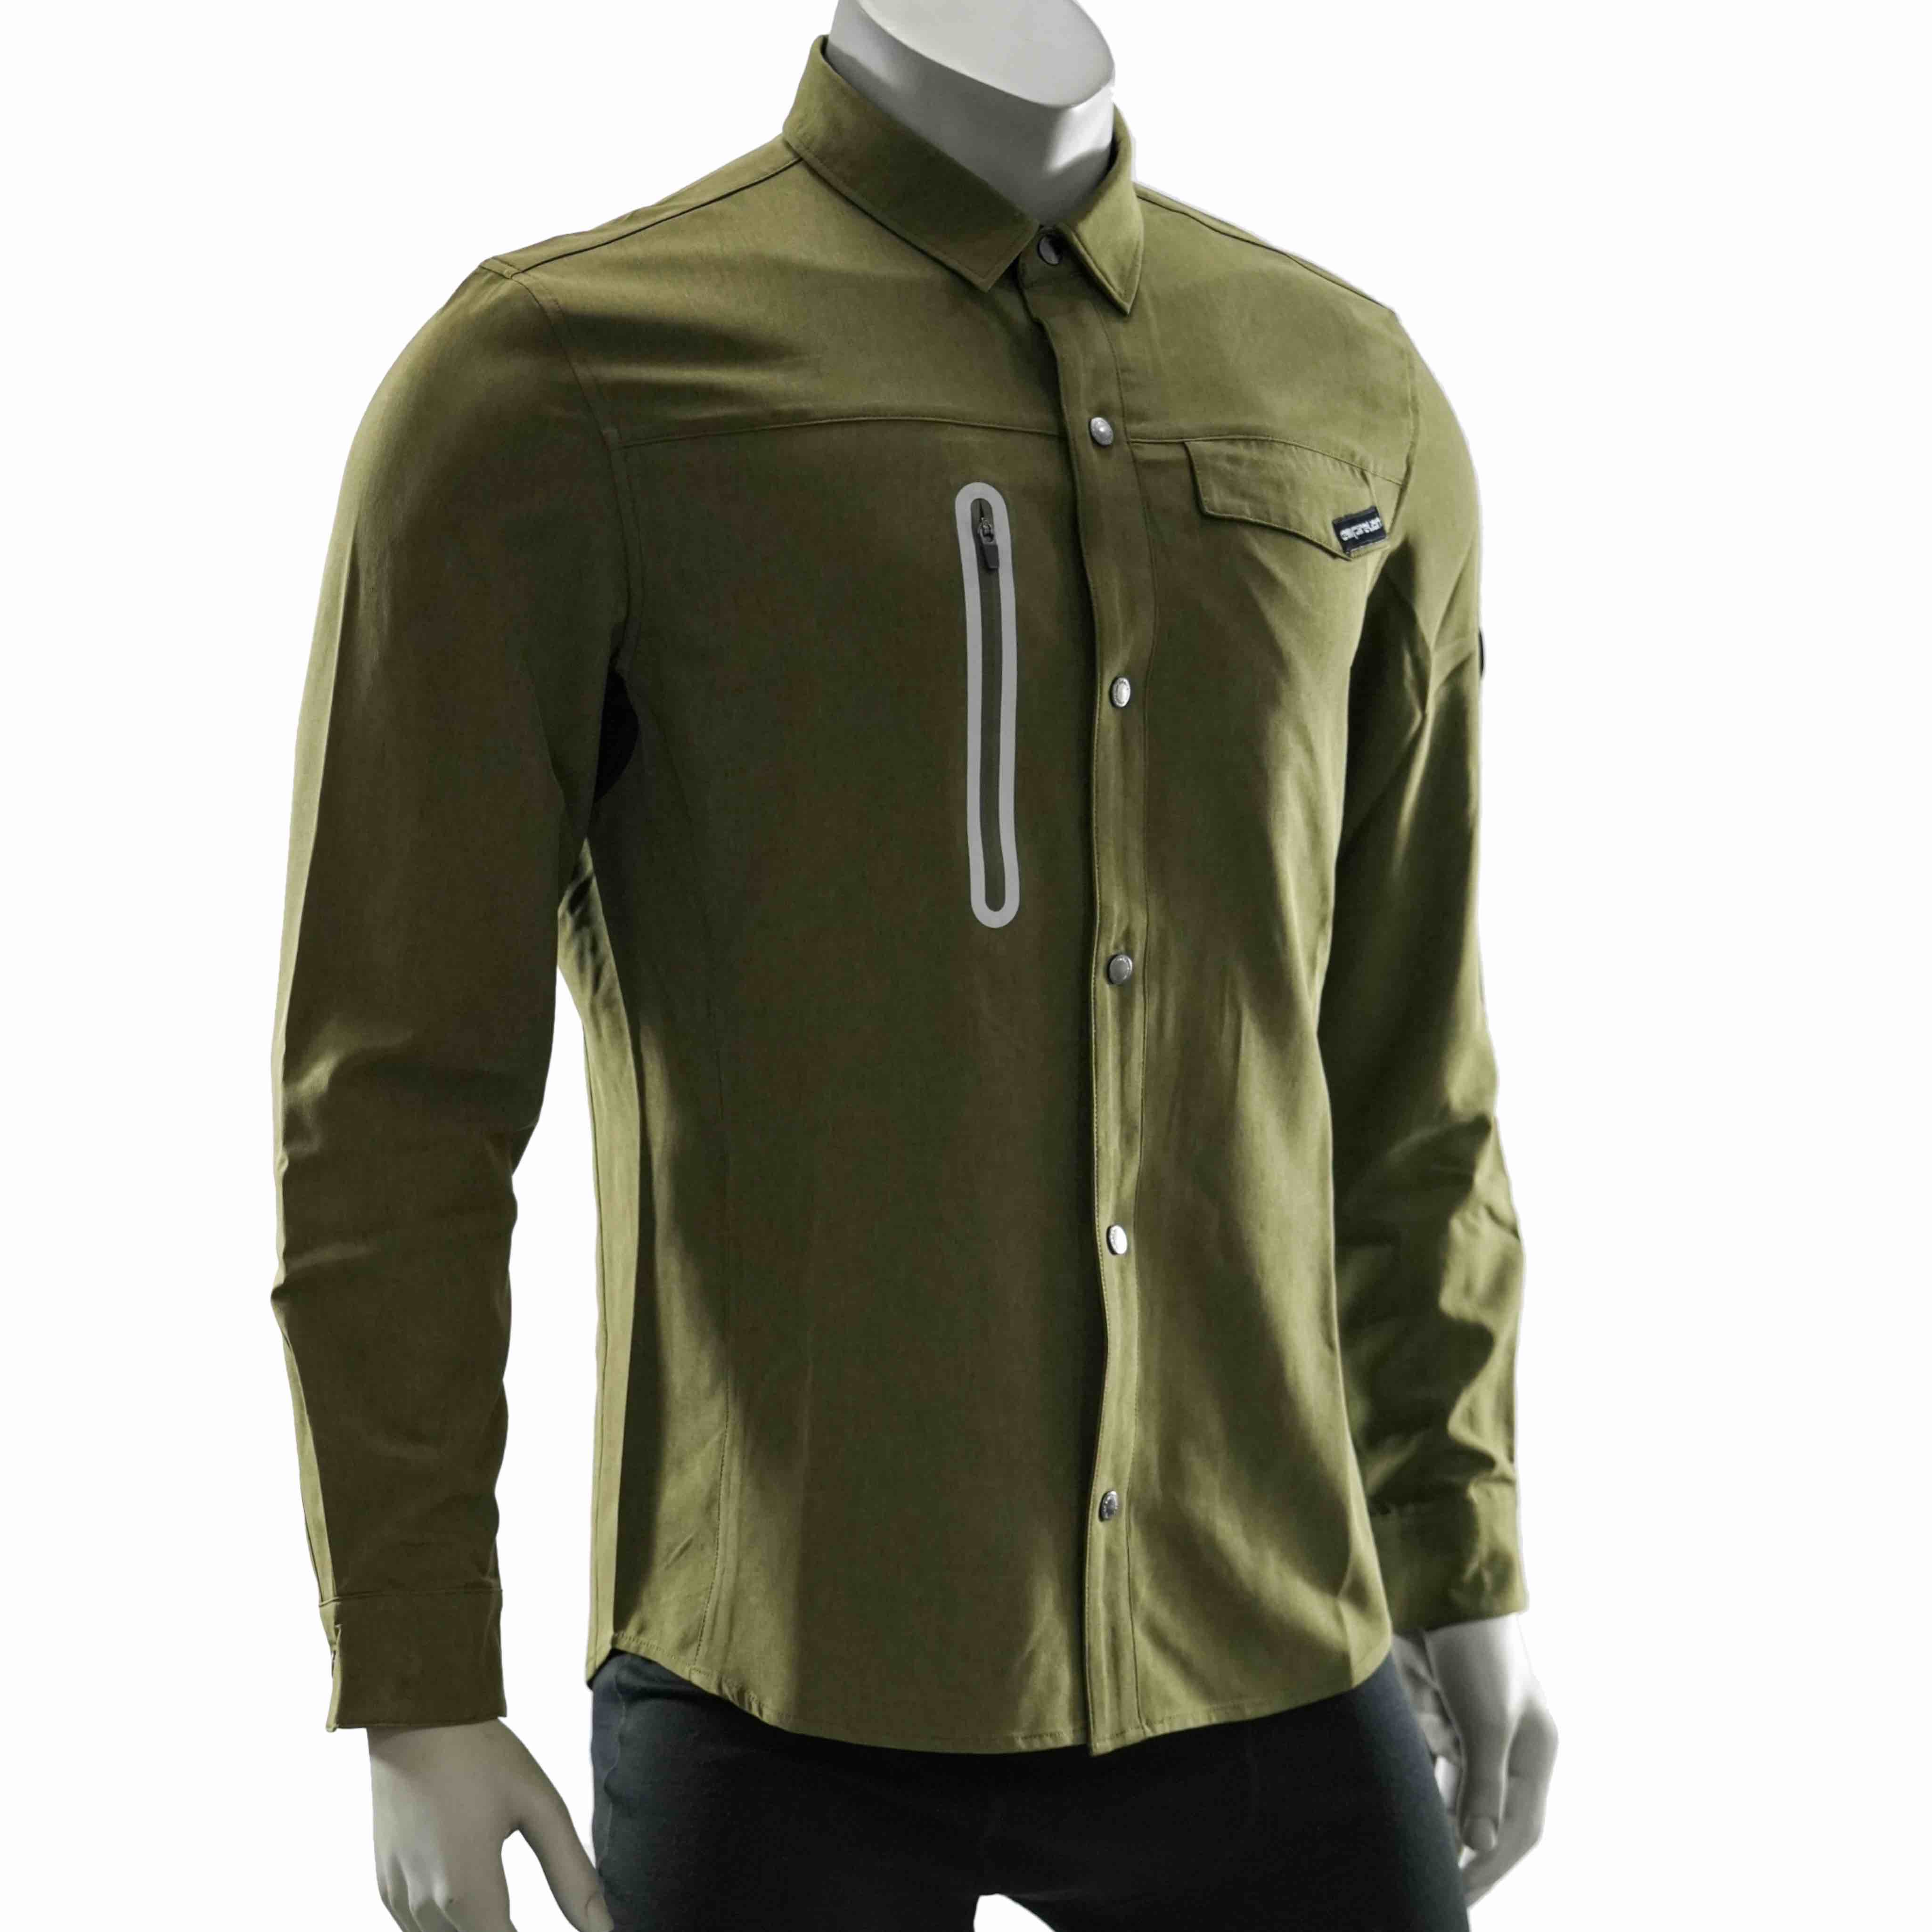 Camisa de trekking de bolsillo con cremallera sellada reflectante